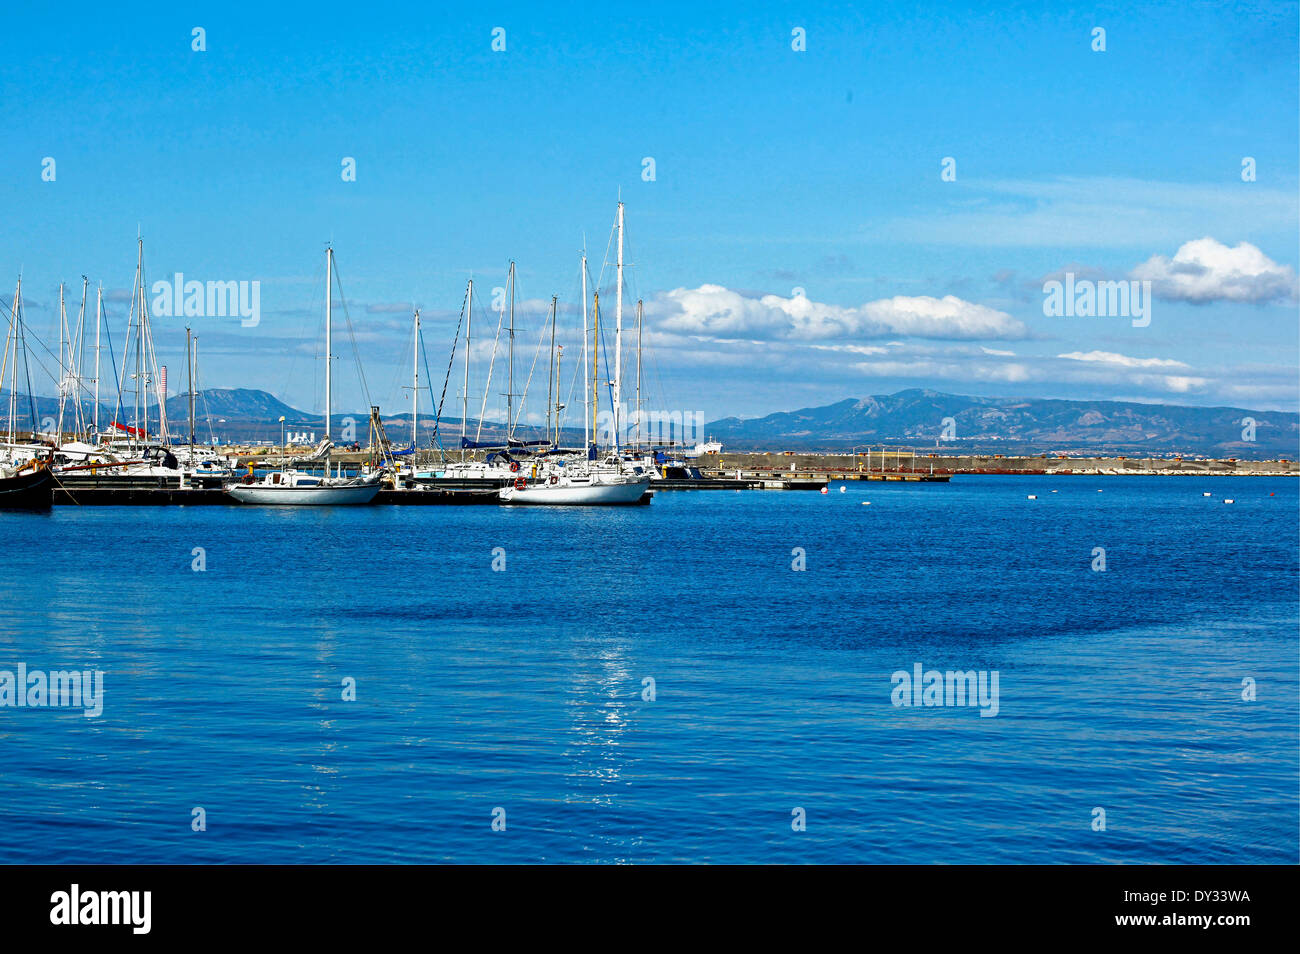 Carloforte- barche e velieri nel porto nuovo - Isola di San Pietro Sardegna Foto Stock